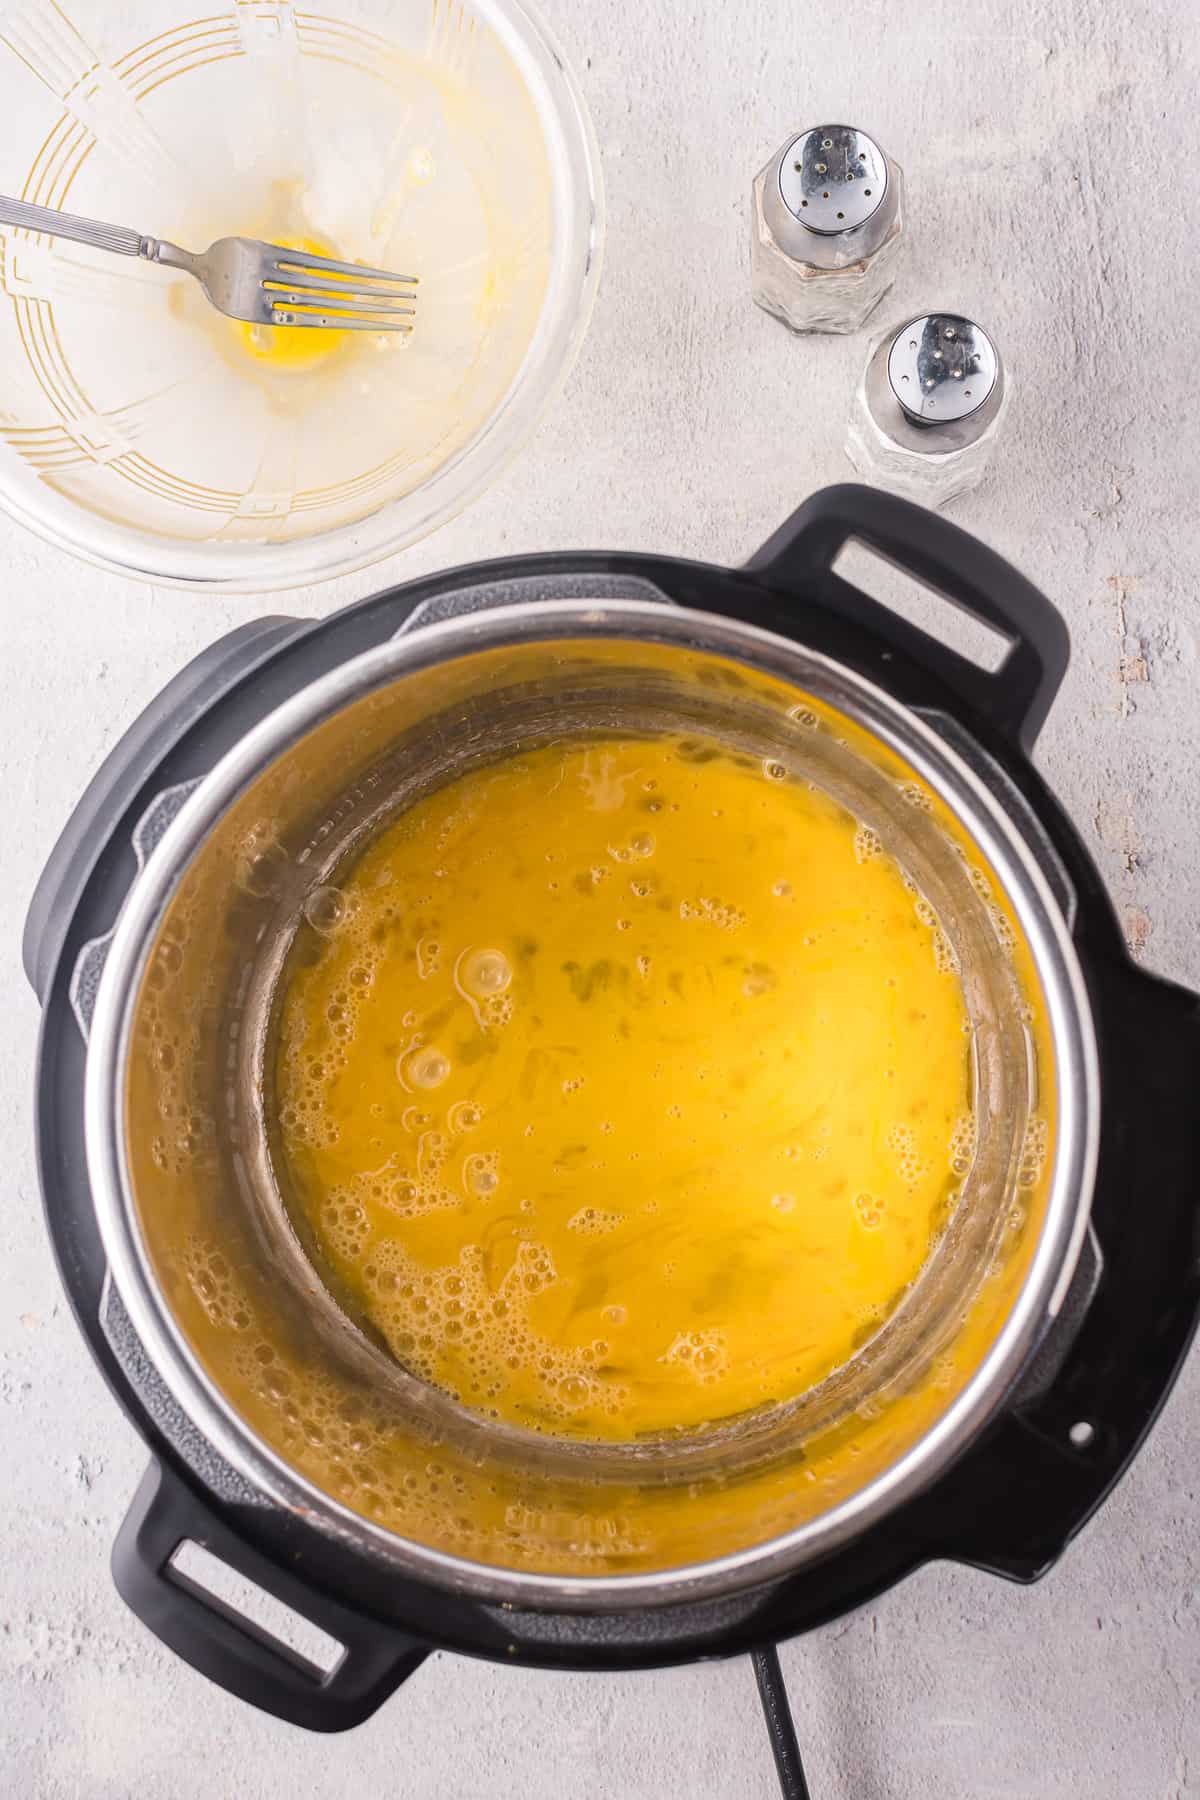 Uncooked eggs in instant pot.